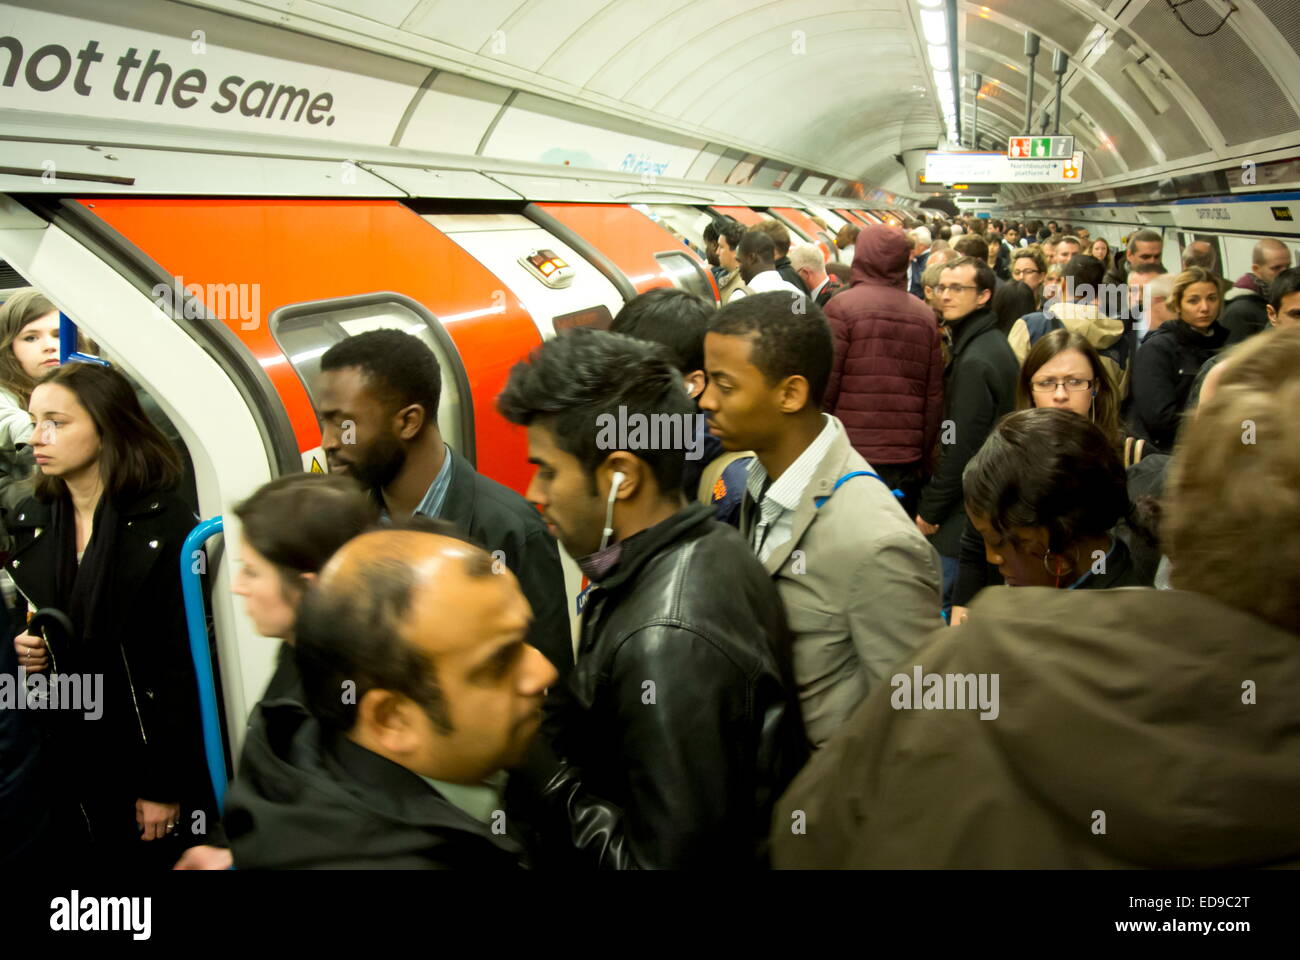 La foule des banlieusards et descendre un train à la station Oxford Circus sur la ligne Victoria, London, UK Banque D'Images